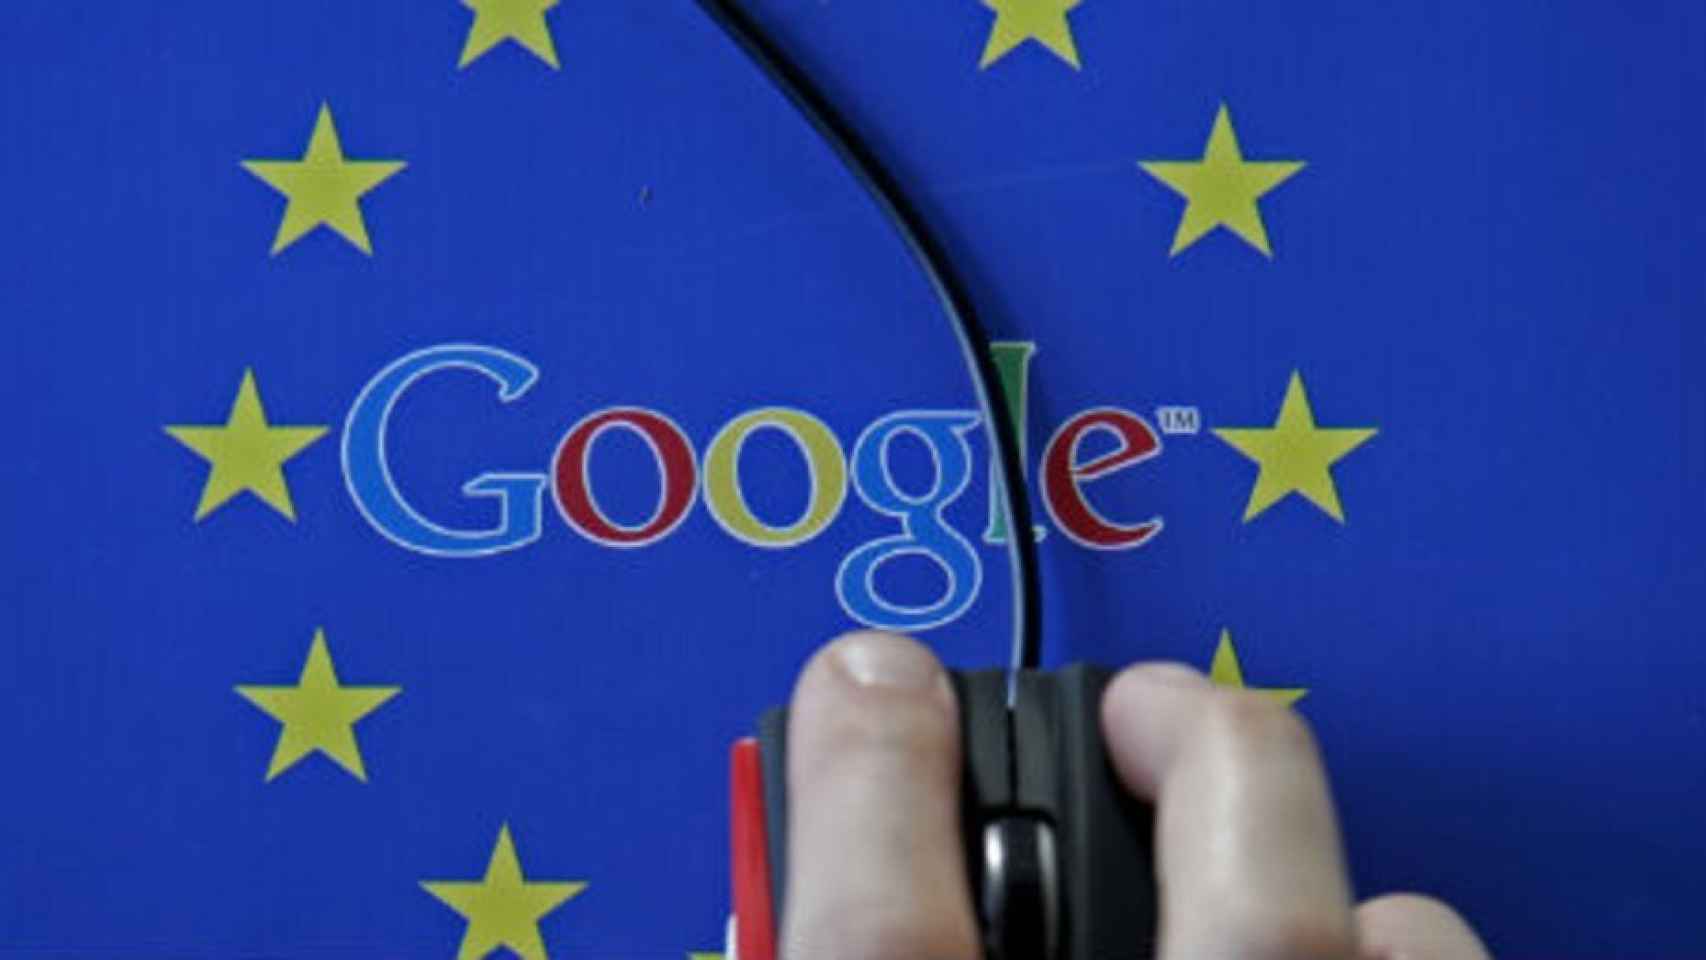 La actualidad tecnológica de la semana: Sanción millonaria a Google